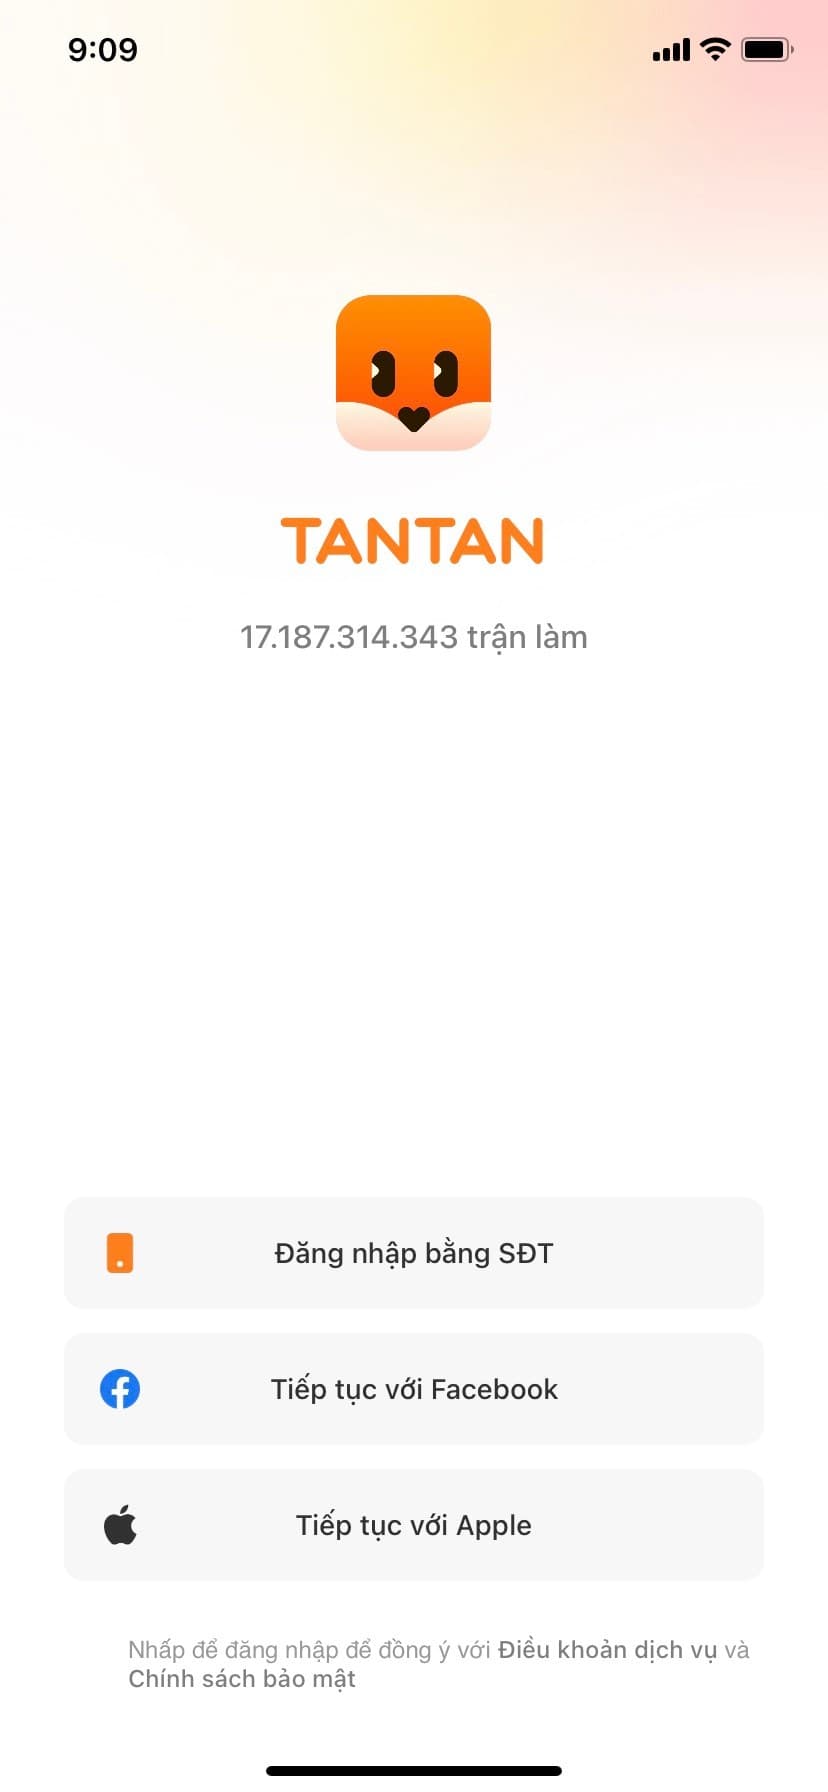 Mở ứng dụng TanTan và lựa chọn hình thức đăng nhập